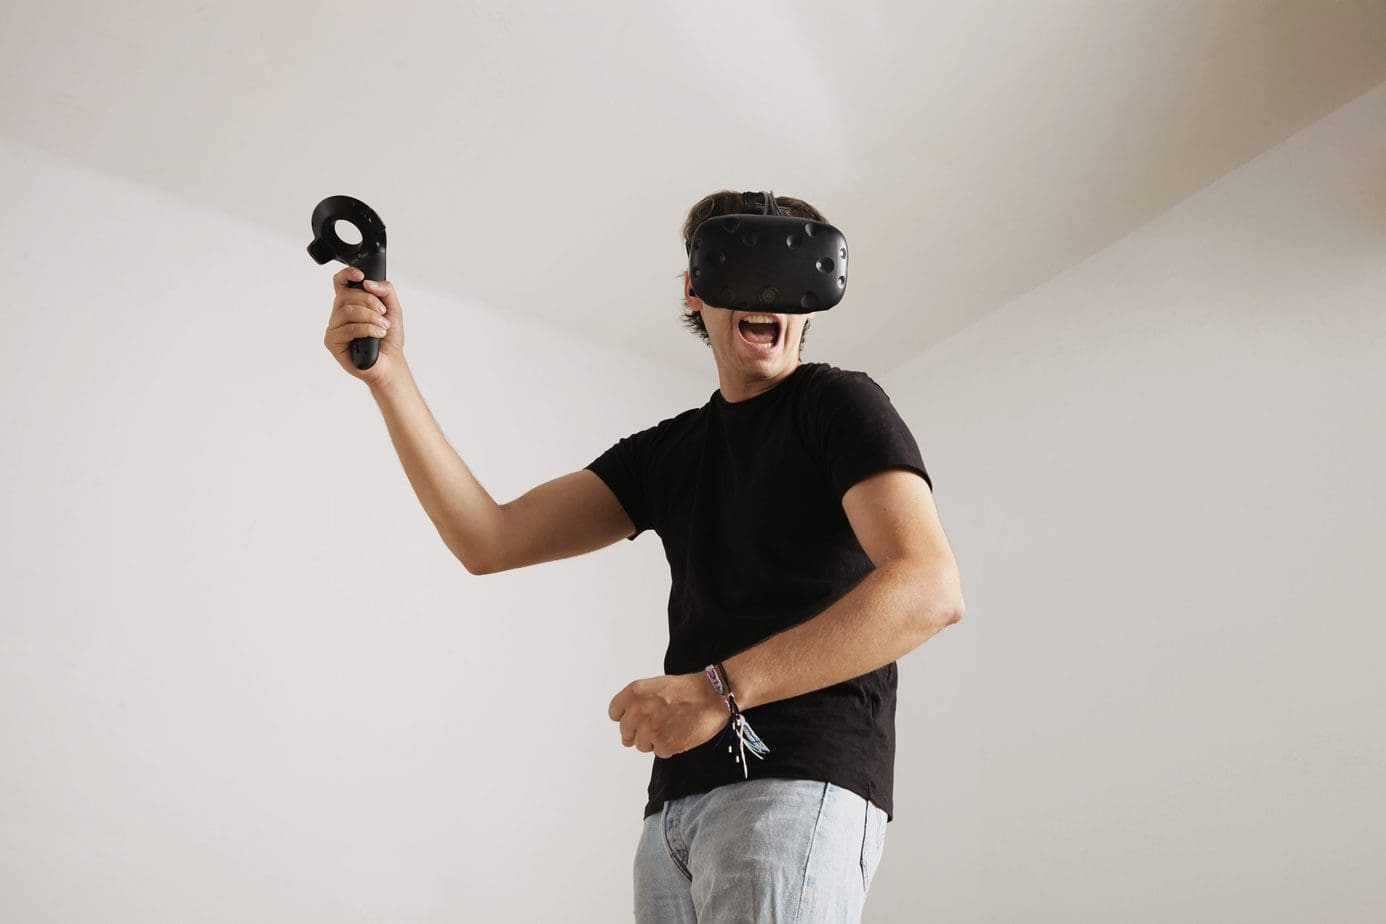 Najlepsze gry ruchowe bazujące na technologii VR